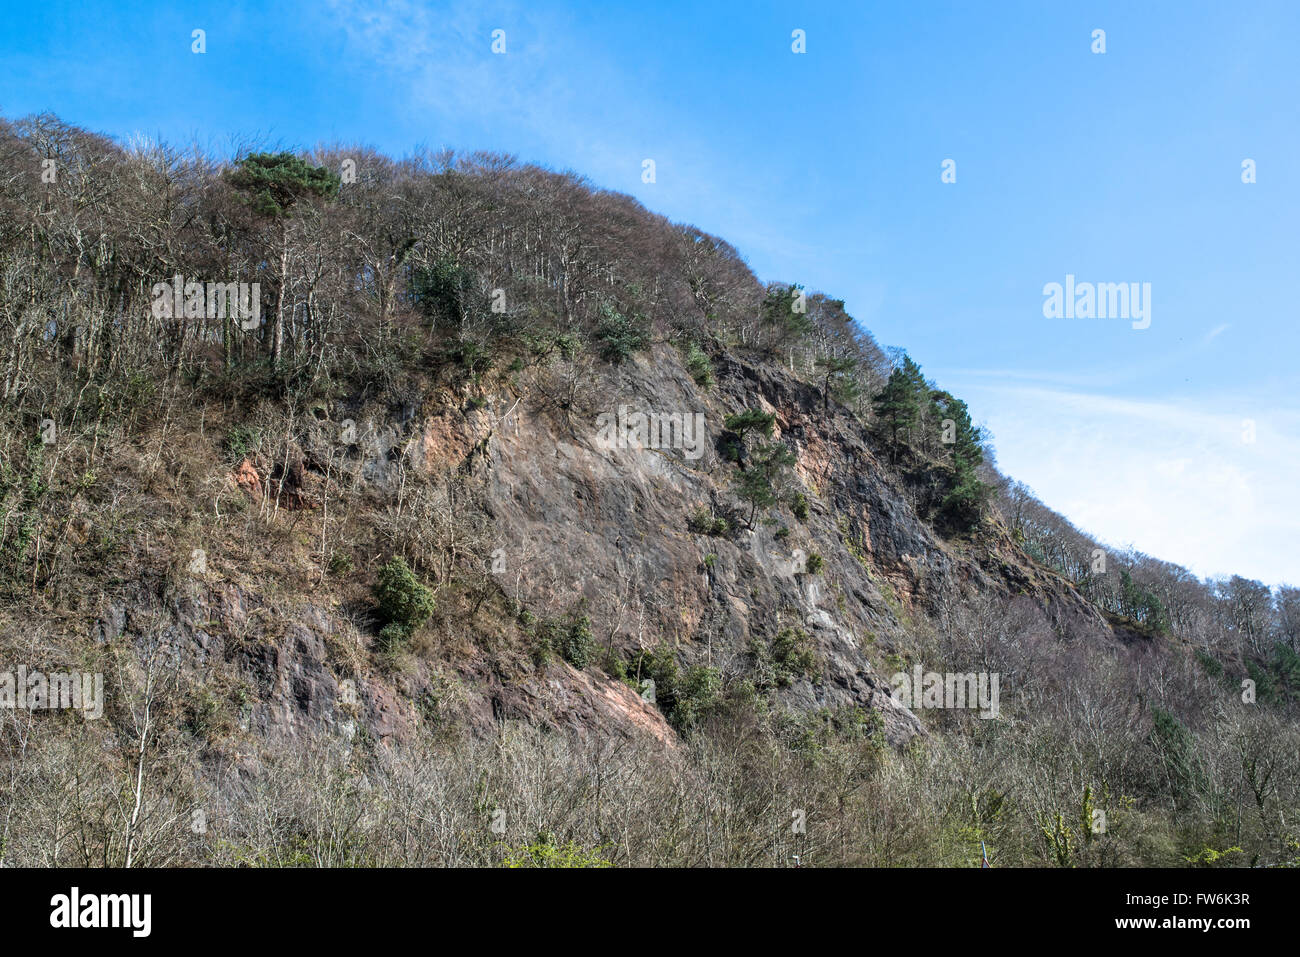 Una cara de la roca con un bosque a lo largo de la cresta. Foto de stock